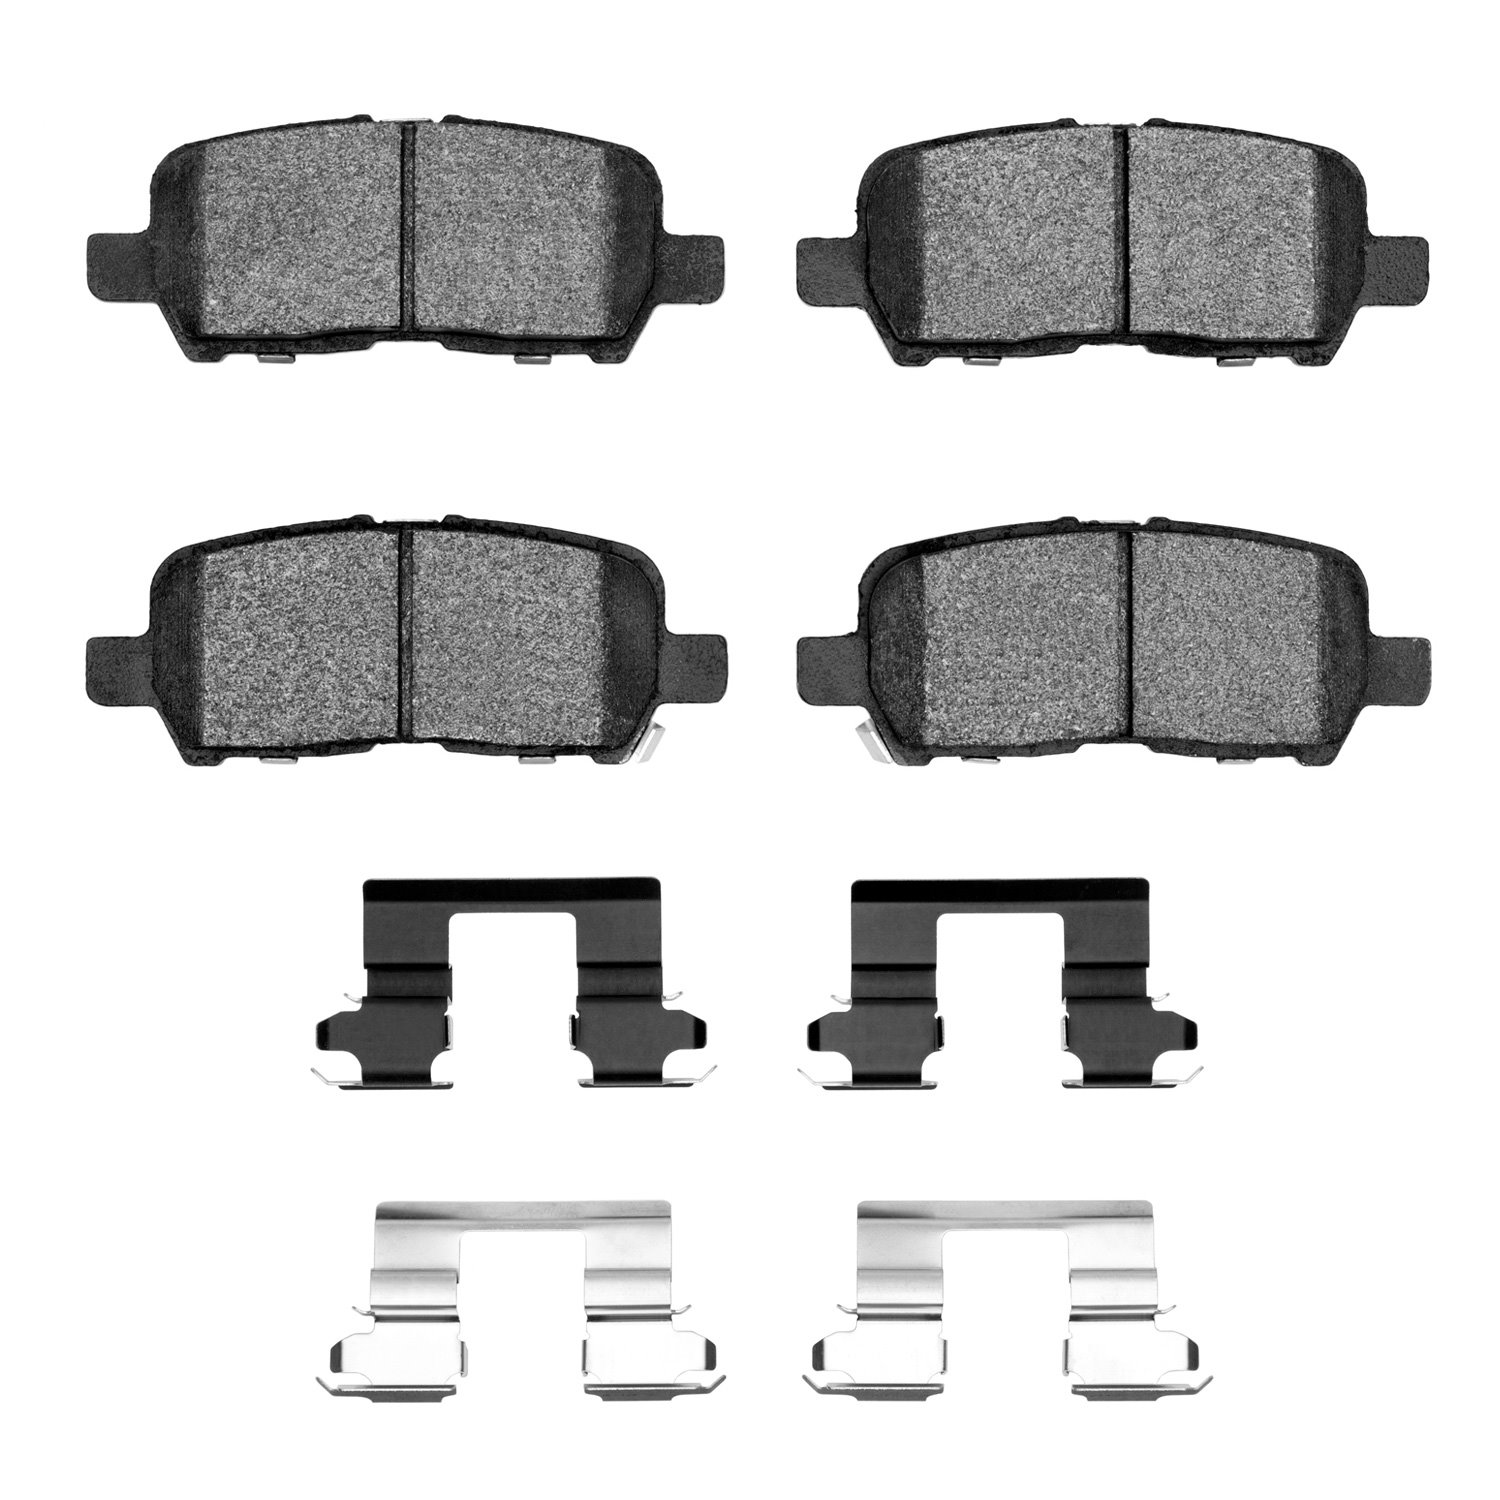 1310-0999-01 3000-Series Ceramic Brake Pads & Hardware Kit, 2004-2016 GM, Position: Rear